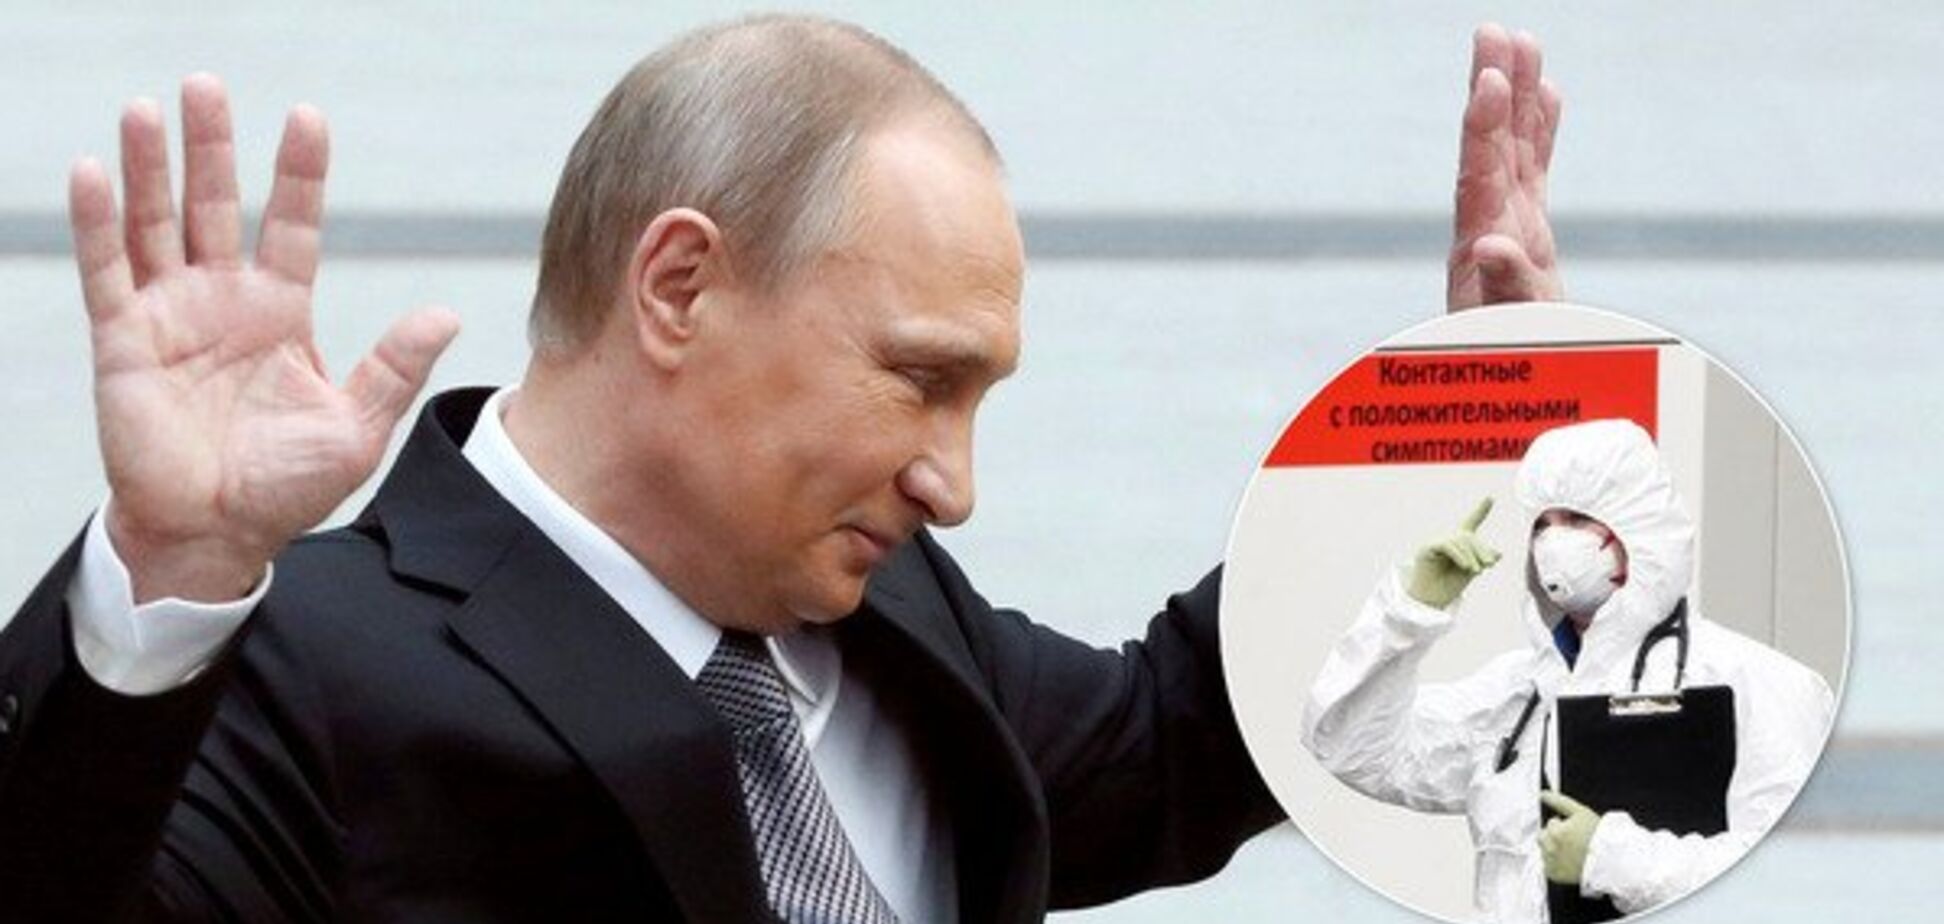 Путін захищений від коронавірусу, його могли накачати – російські політологи